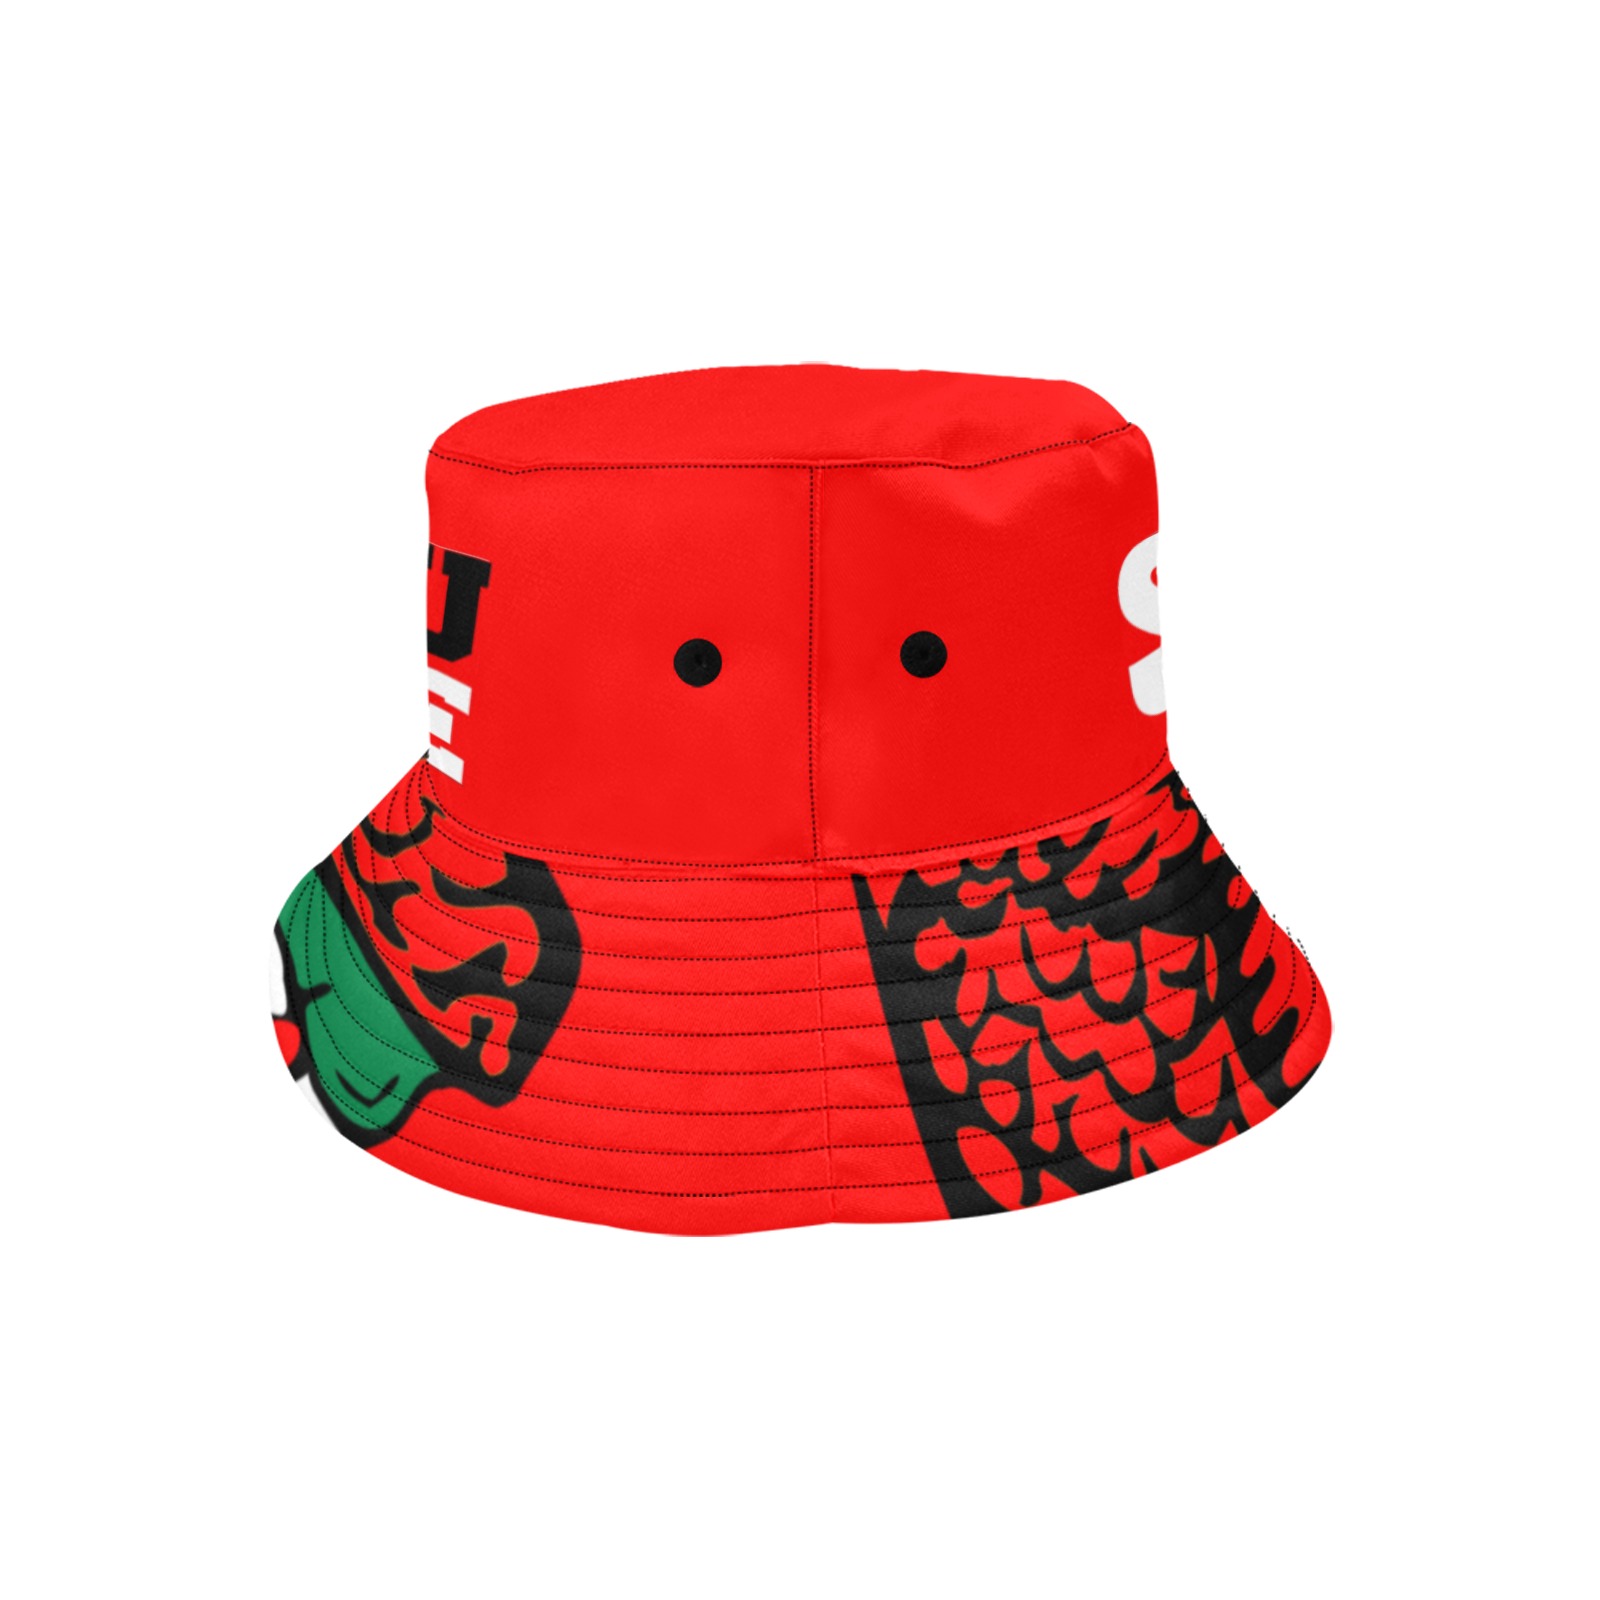 My HBCU MADE ME Red Bucket Unisex Summer Bucket Hat